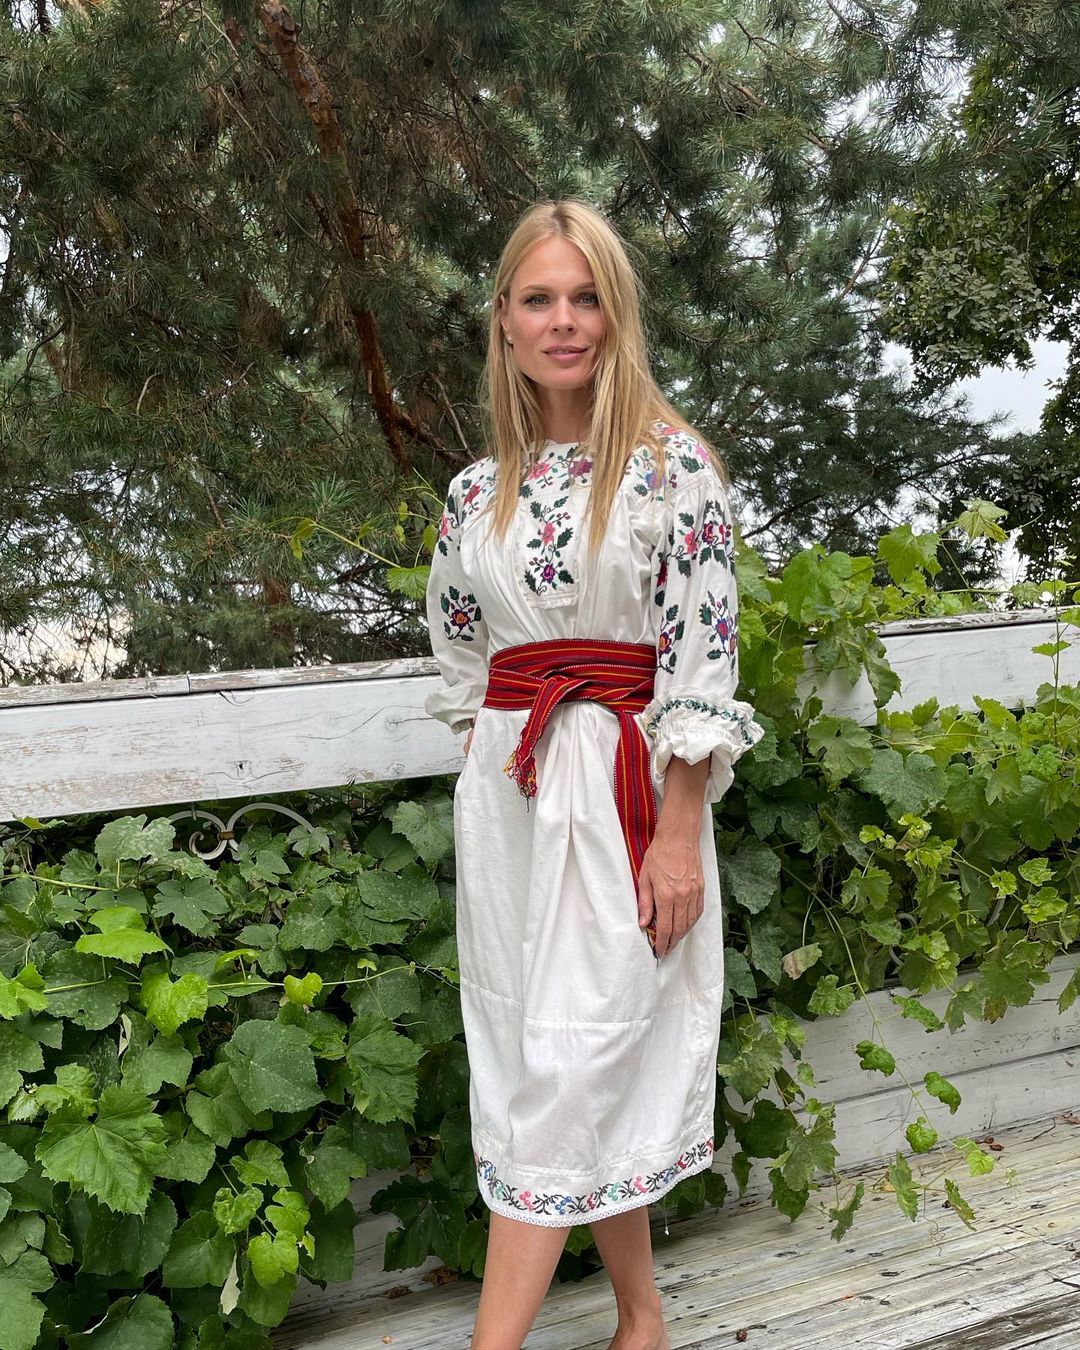 «Когда говорю, что я – из Украины, хочу, чтобы они видели перед собой ухоженную украинку, а не какую-то растерянную девушку», – признается Оля. Фото: Instagram.com/freimutolia/